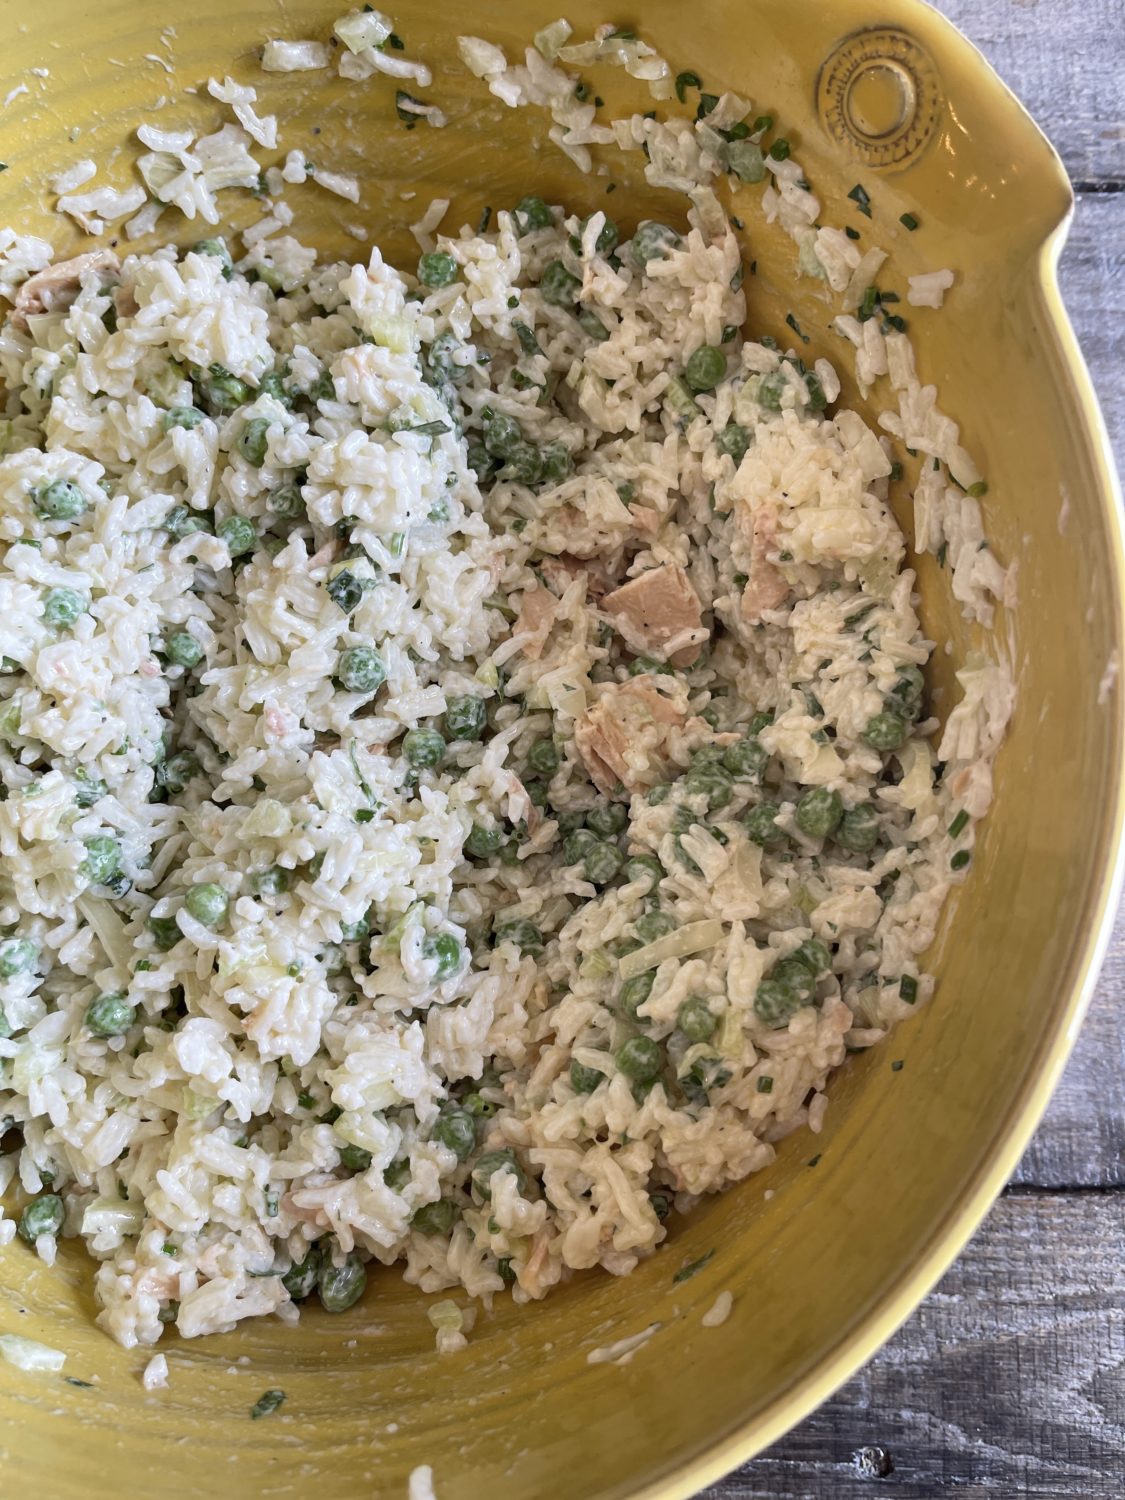 tuna rice salad overhead in yellow bowl